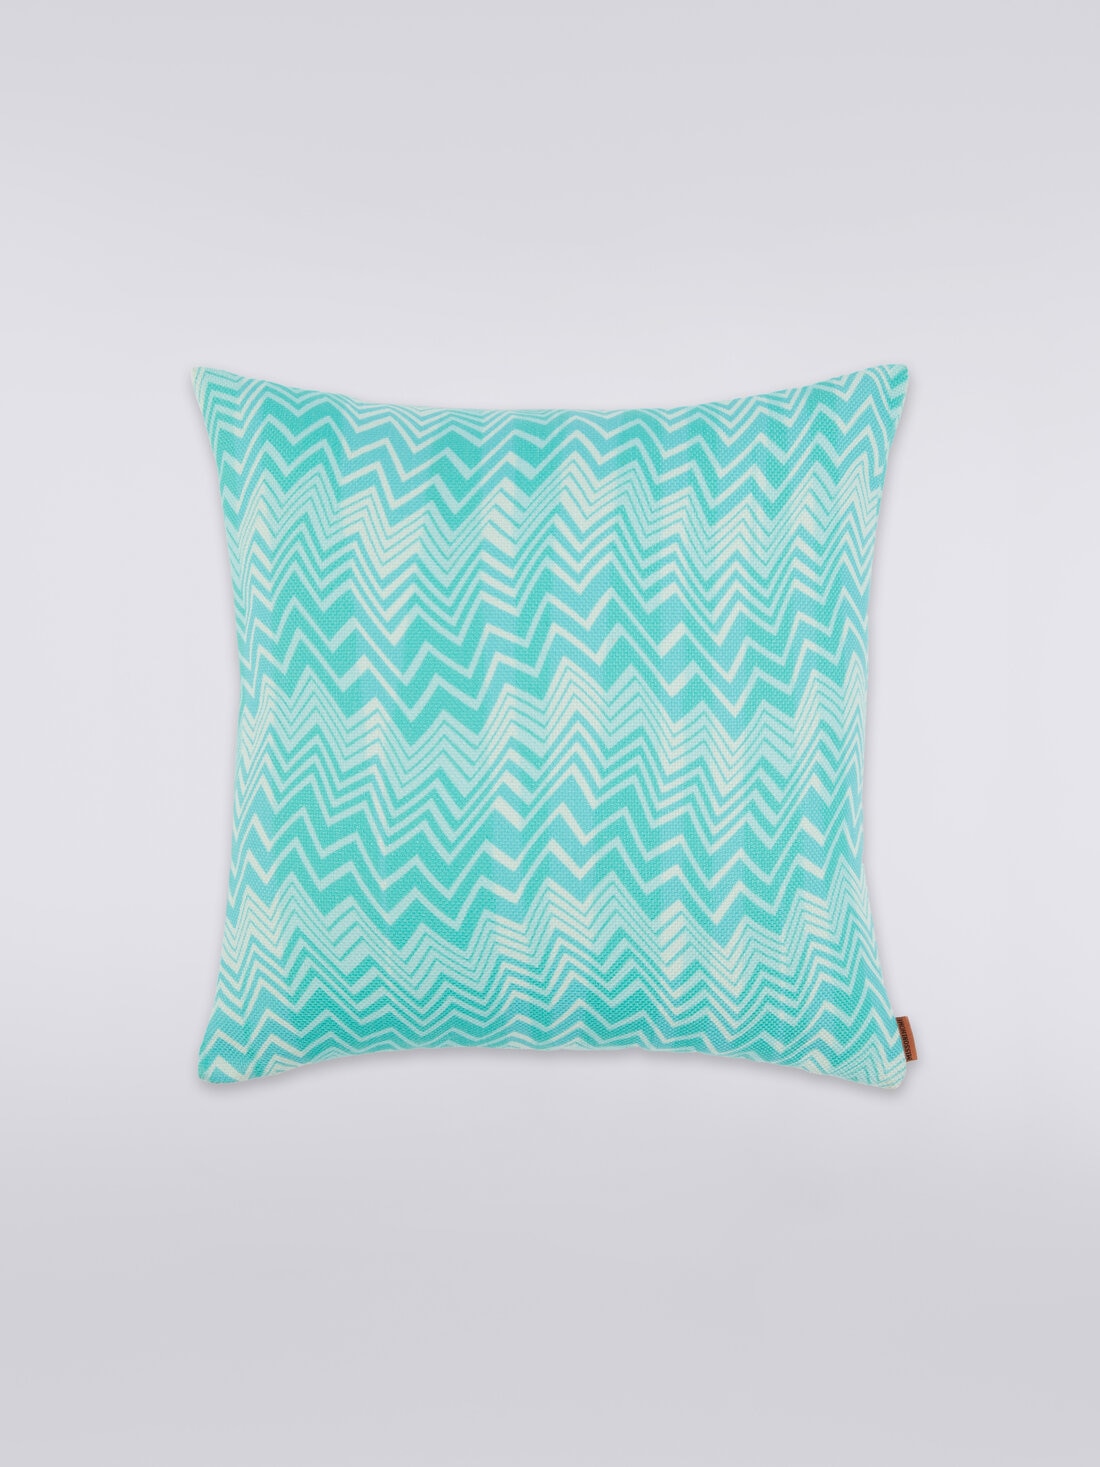 Belize cushion 40x40 cm, Multicoloured  - 8051275581222 - 0